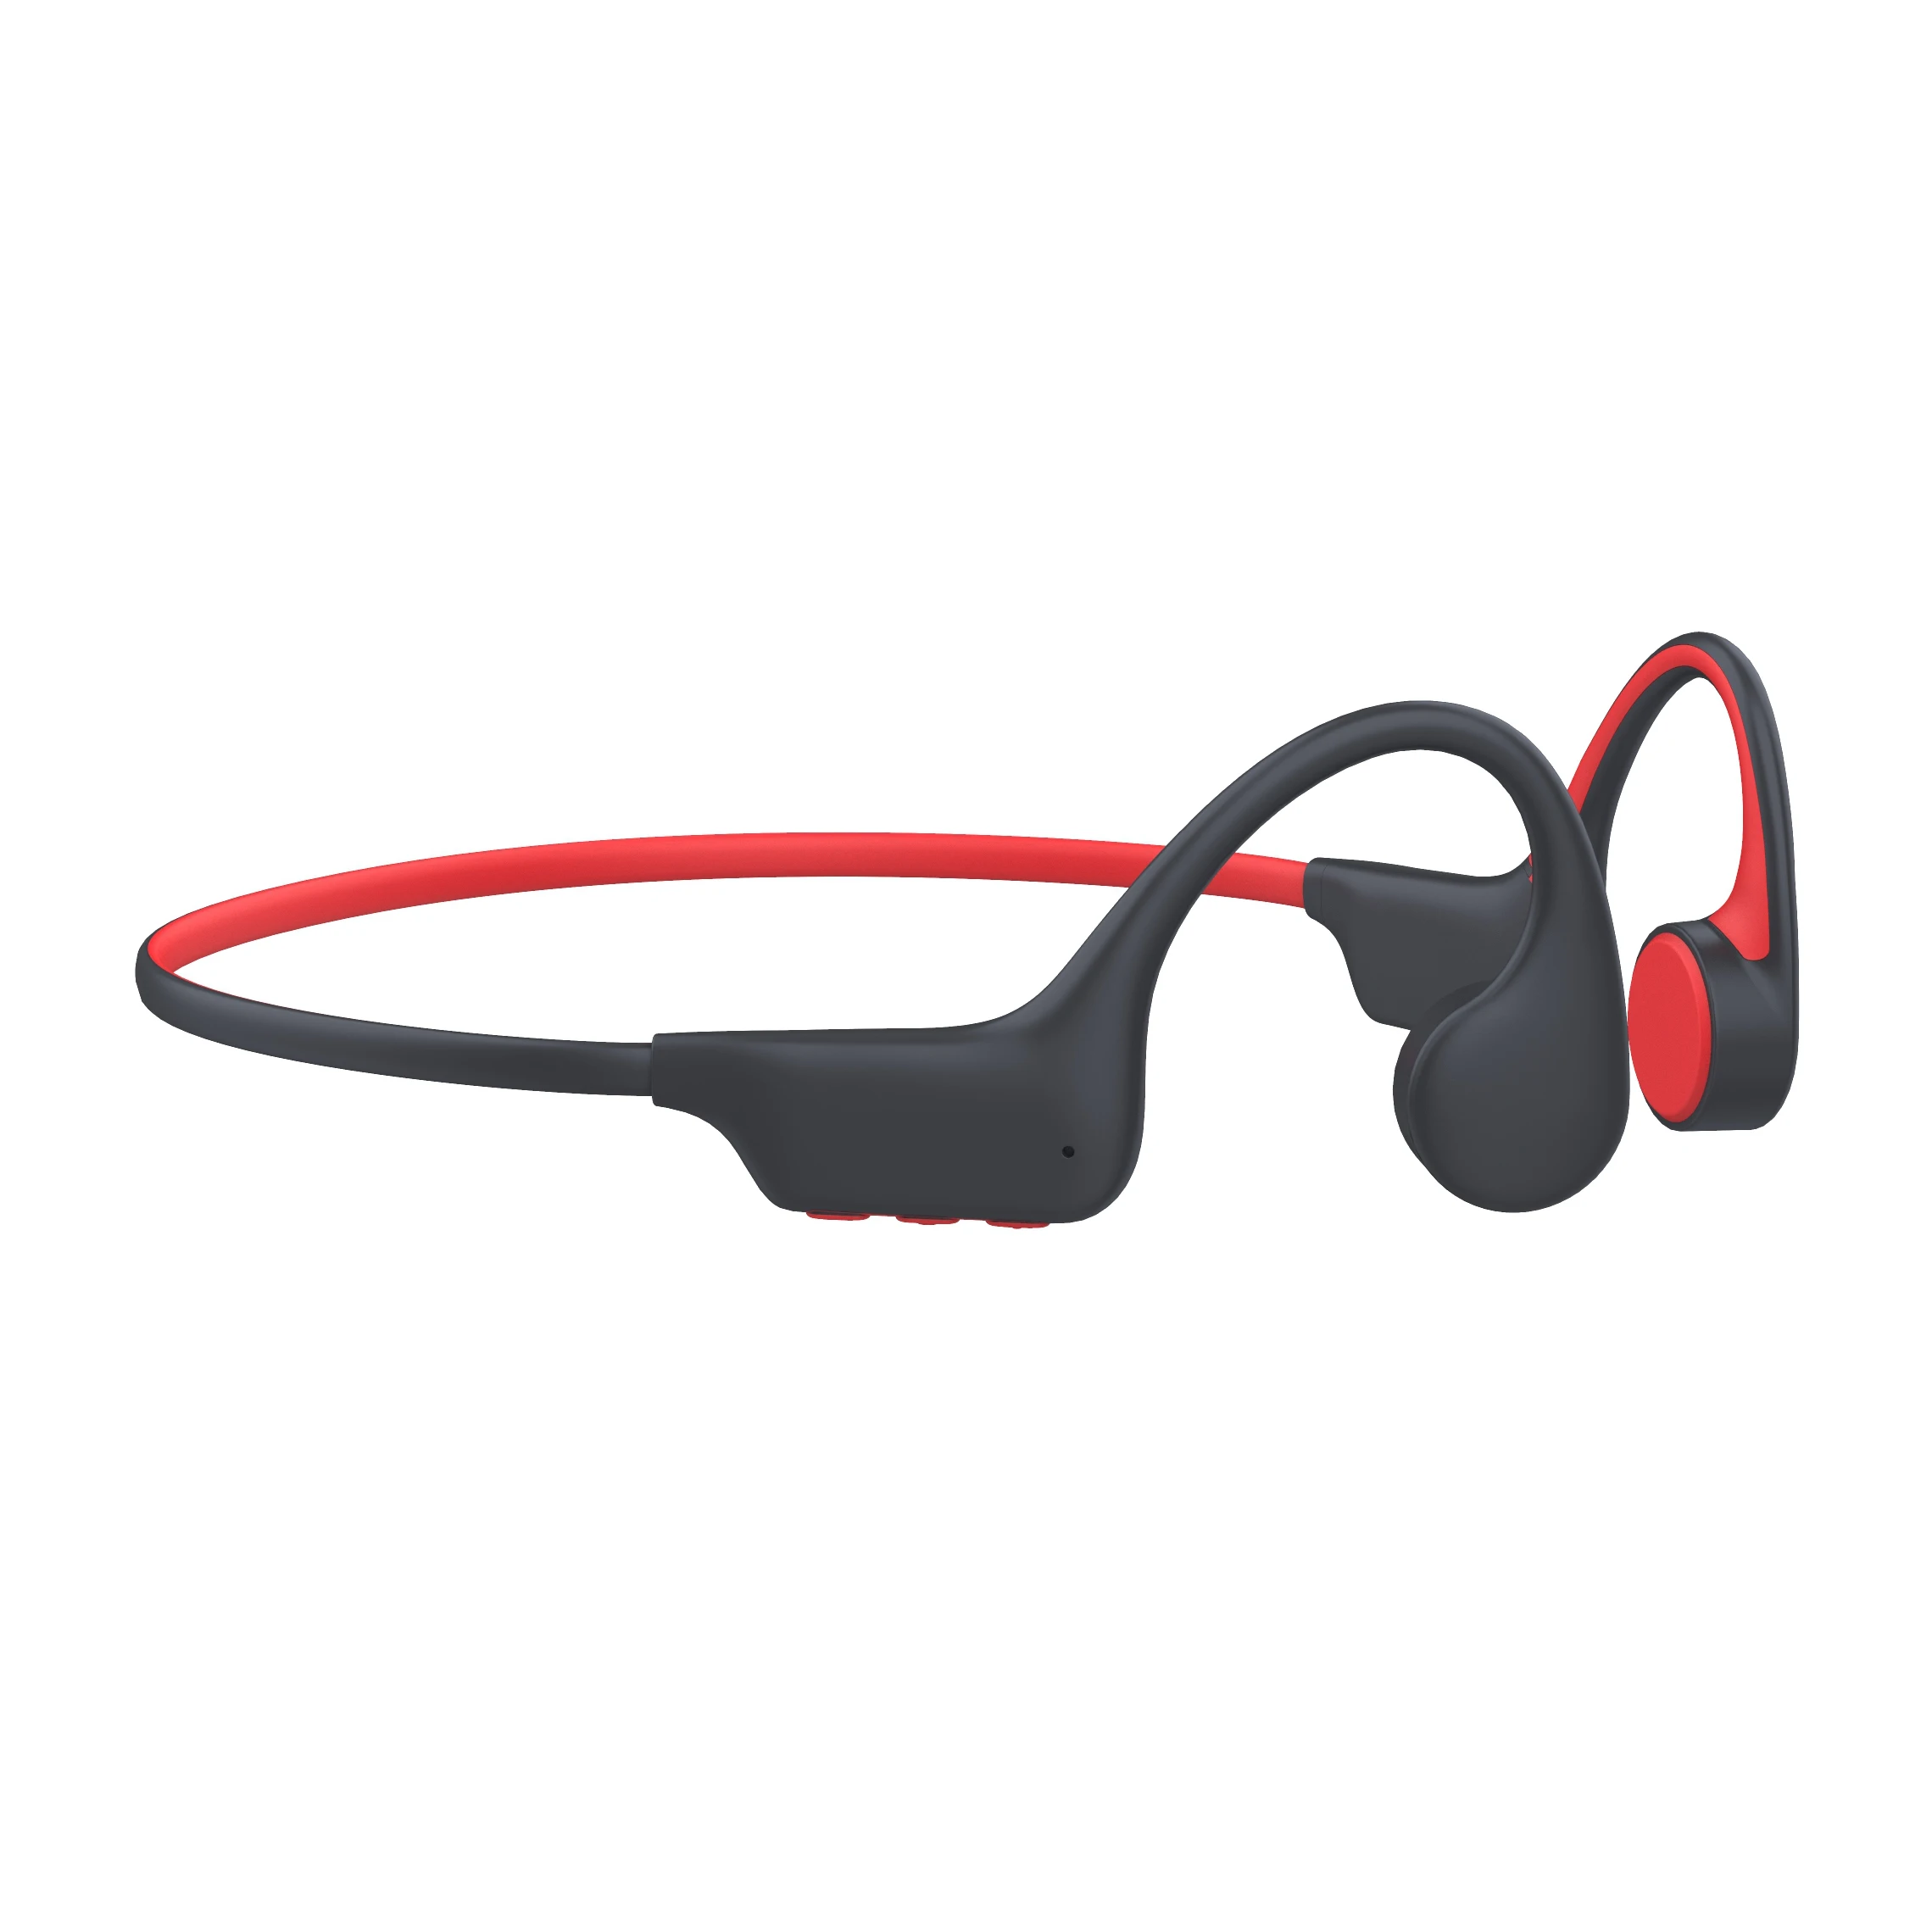 

Bone conduction headphones wireless MP3 player 8G memory sport headset open ear no in ear IPX8 waterproof earphone for swim